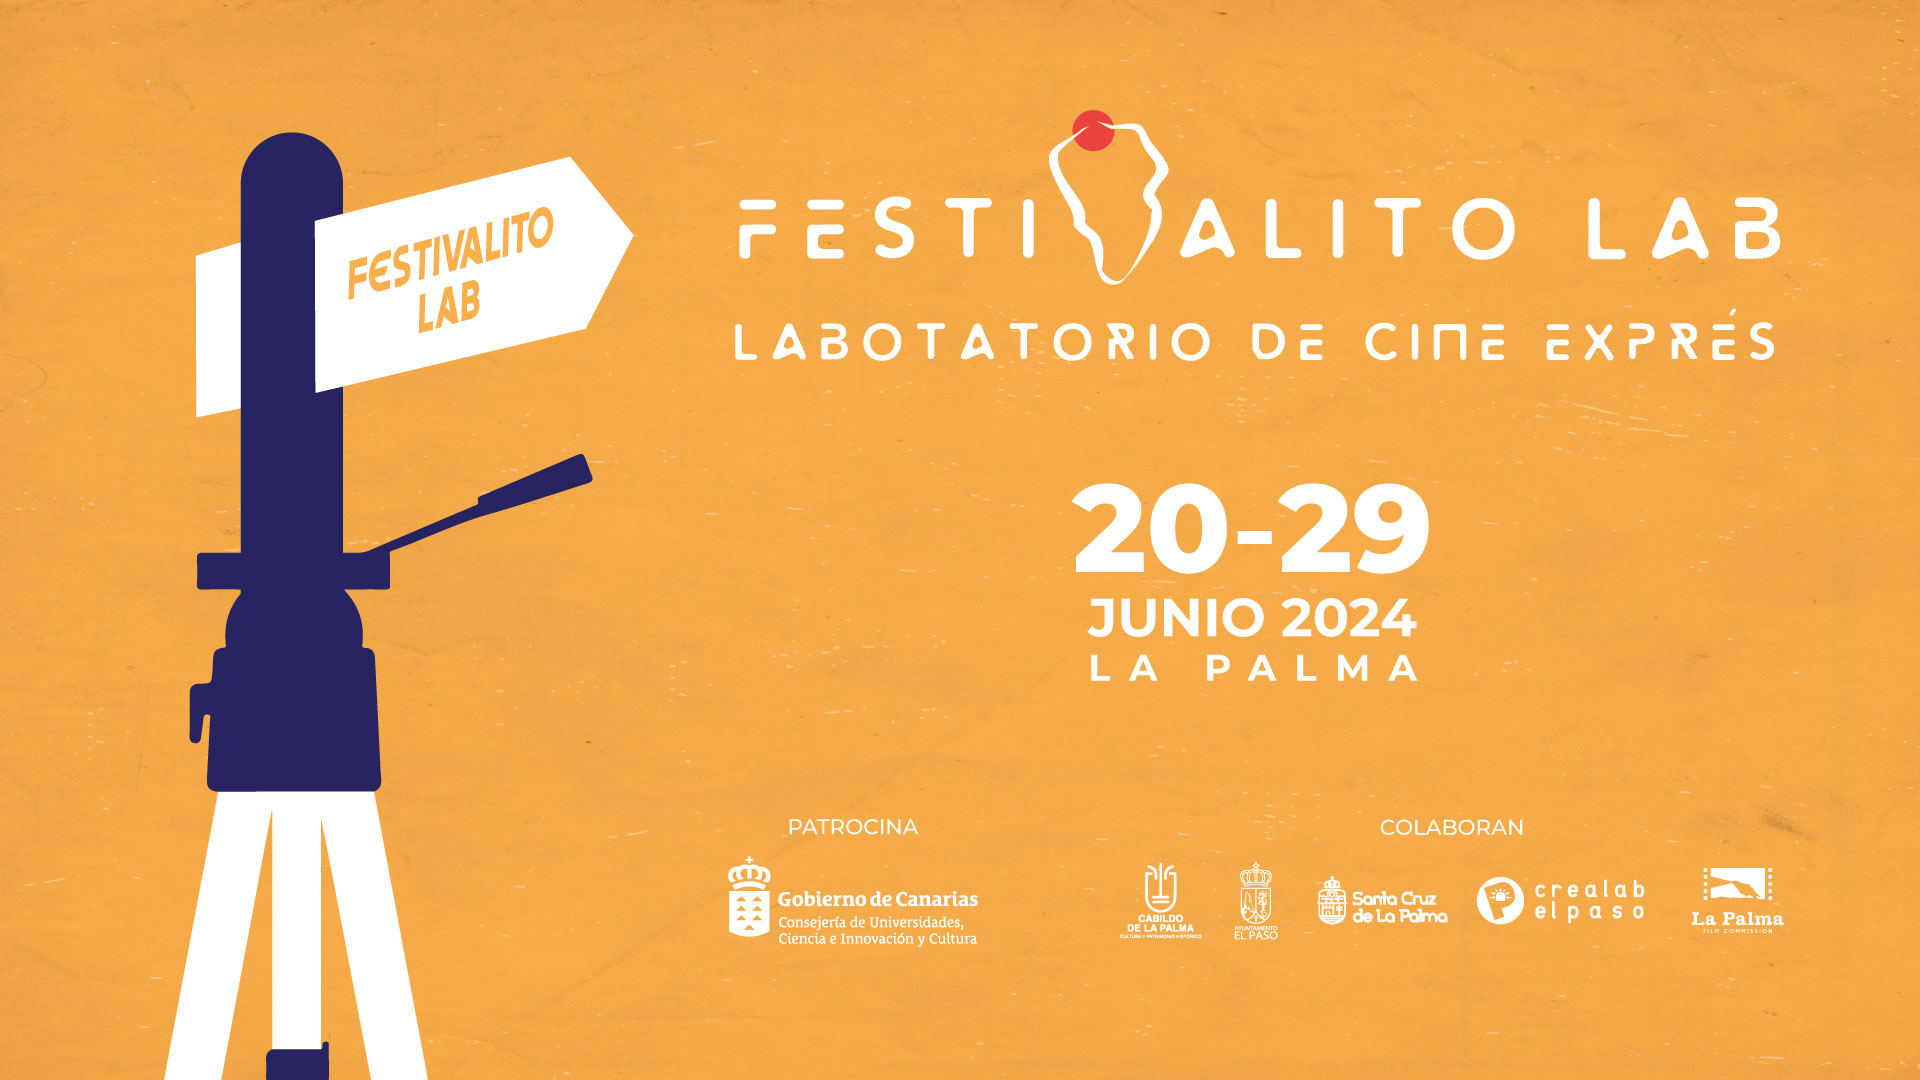 El Festivalito La Palma abre las inscripciones de su Laboratorio de Cine Exprés ‘Festivalito Lab’